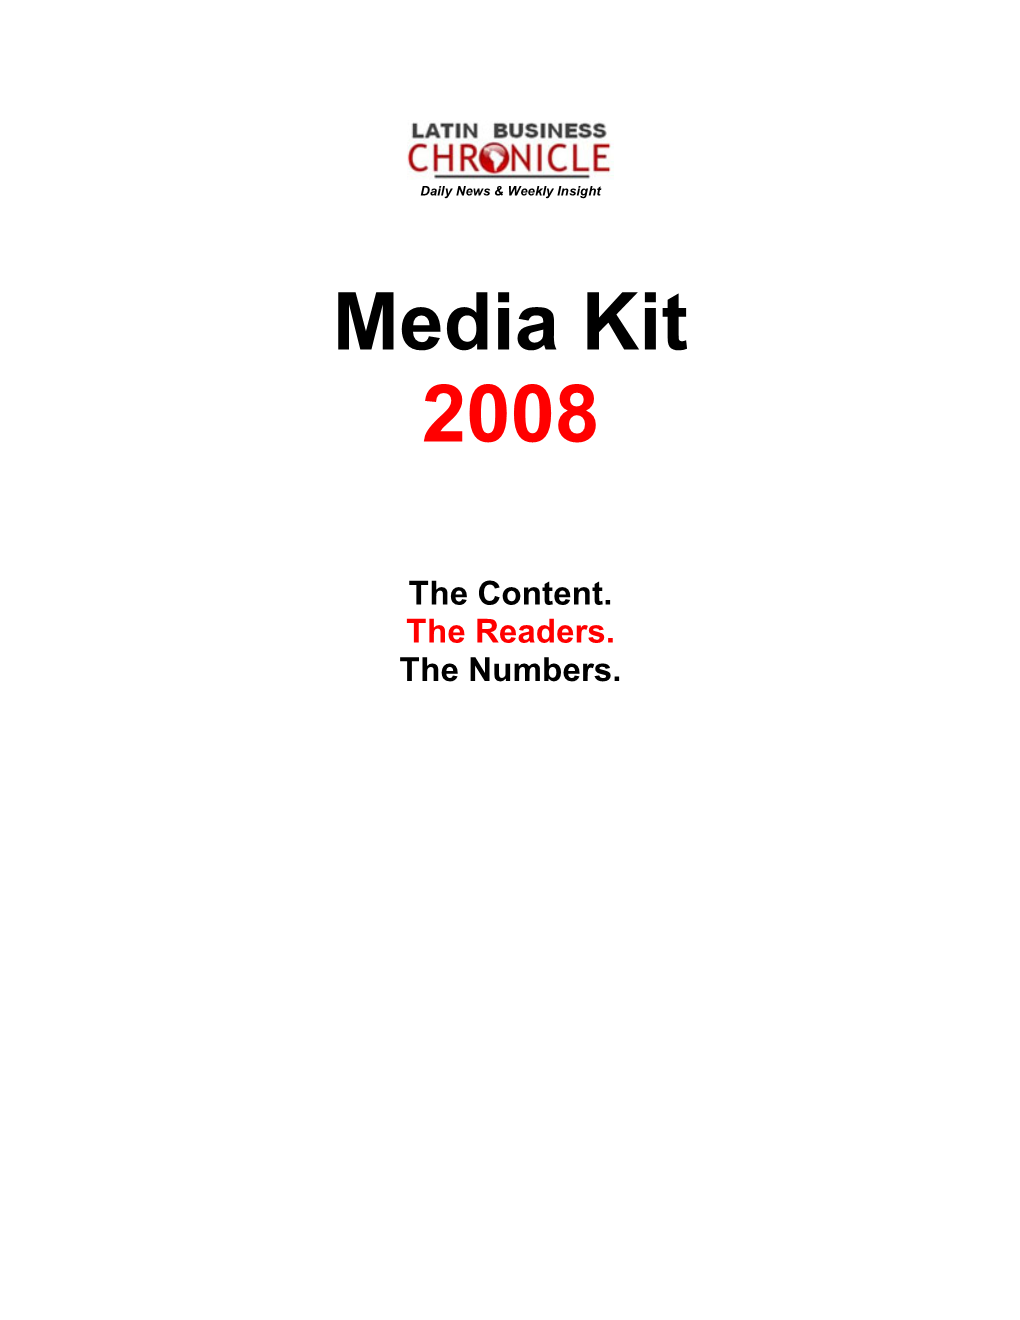 Media Kit 2008